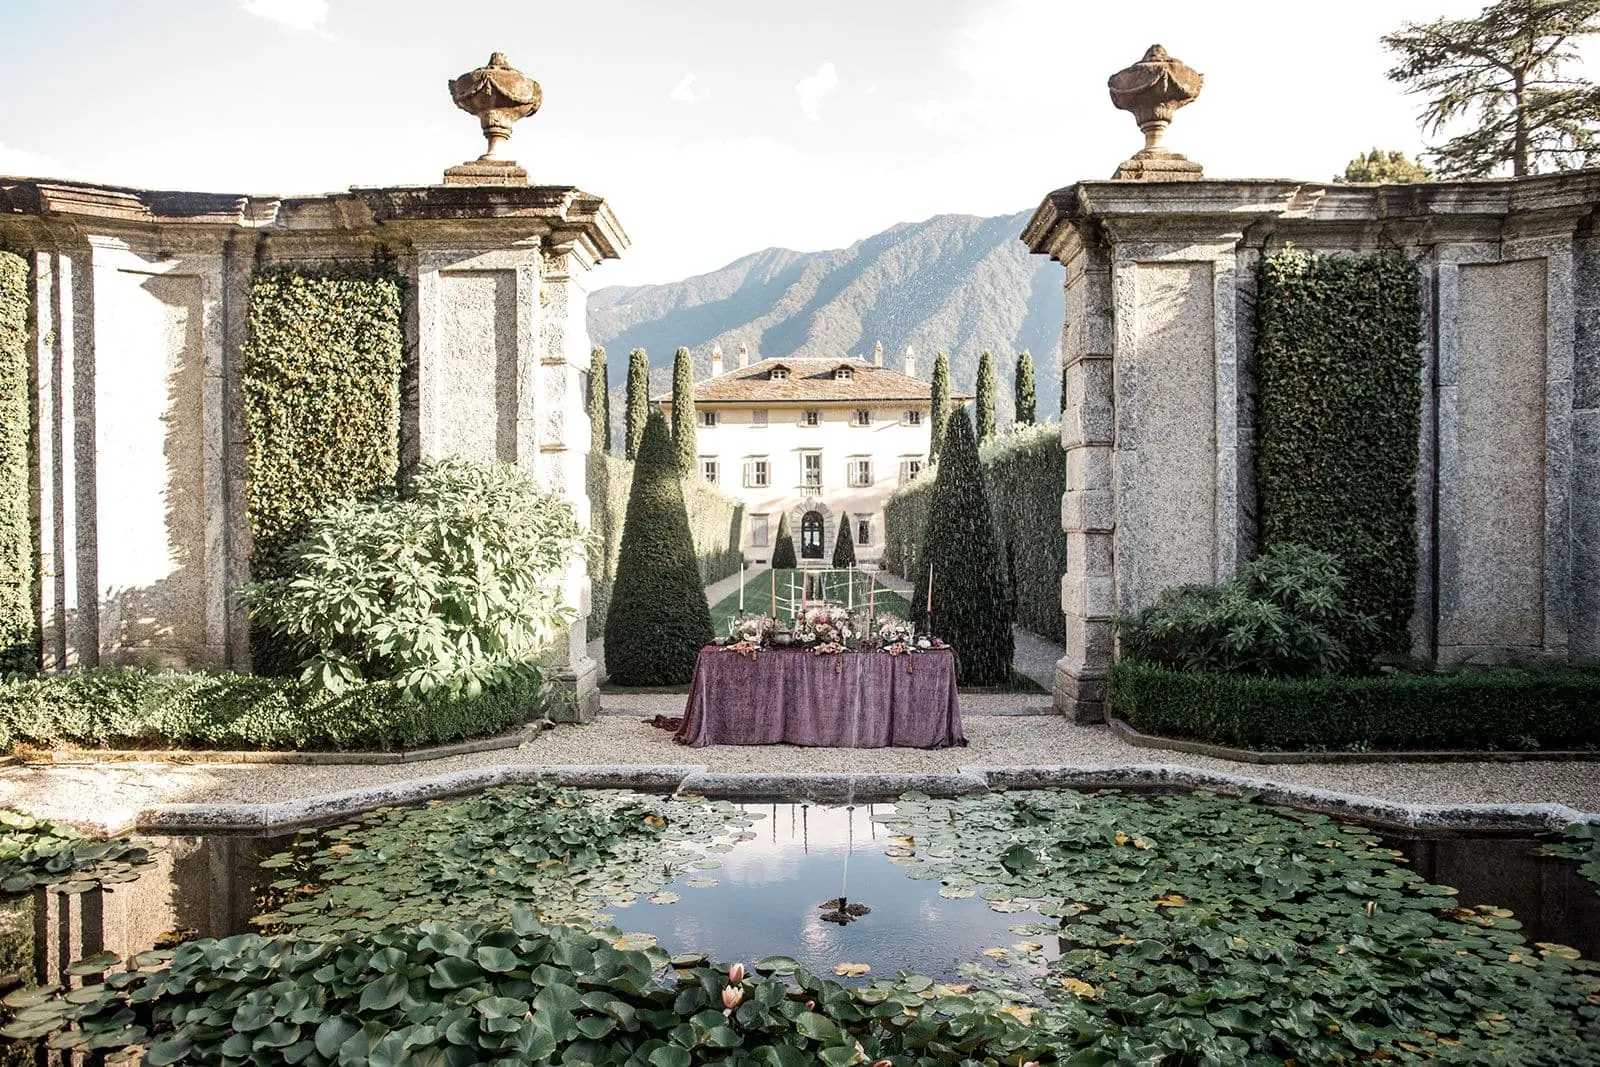 Villa Balbiano ornate and elegant wedding venue in Lake Como